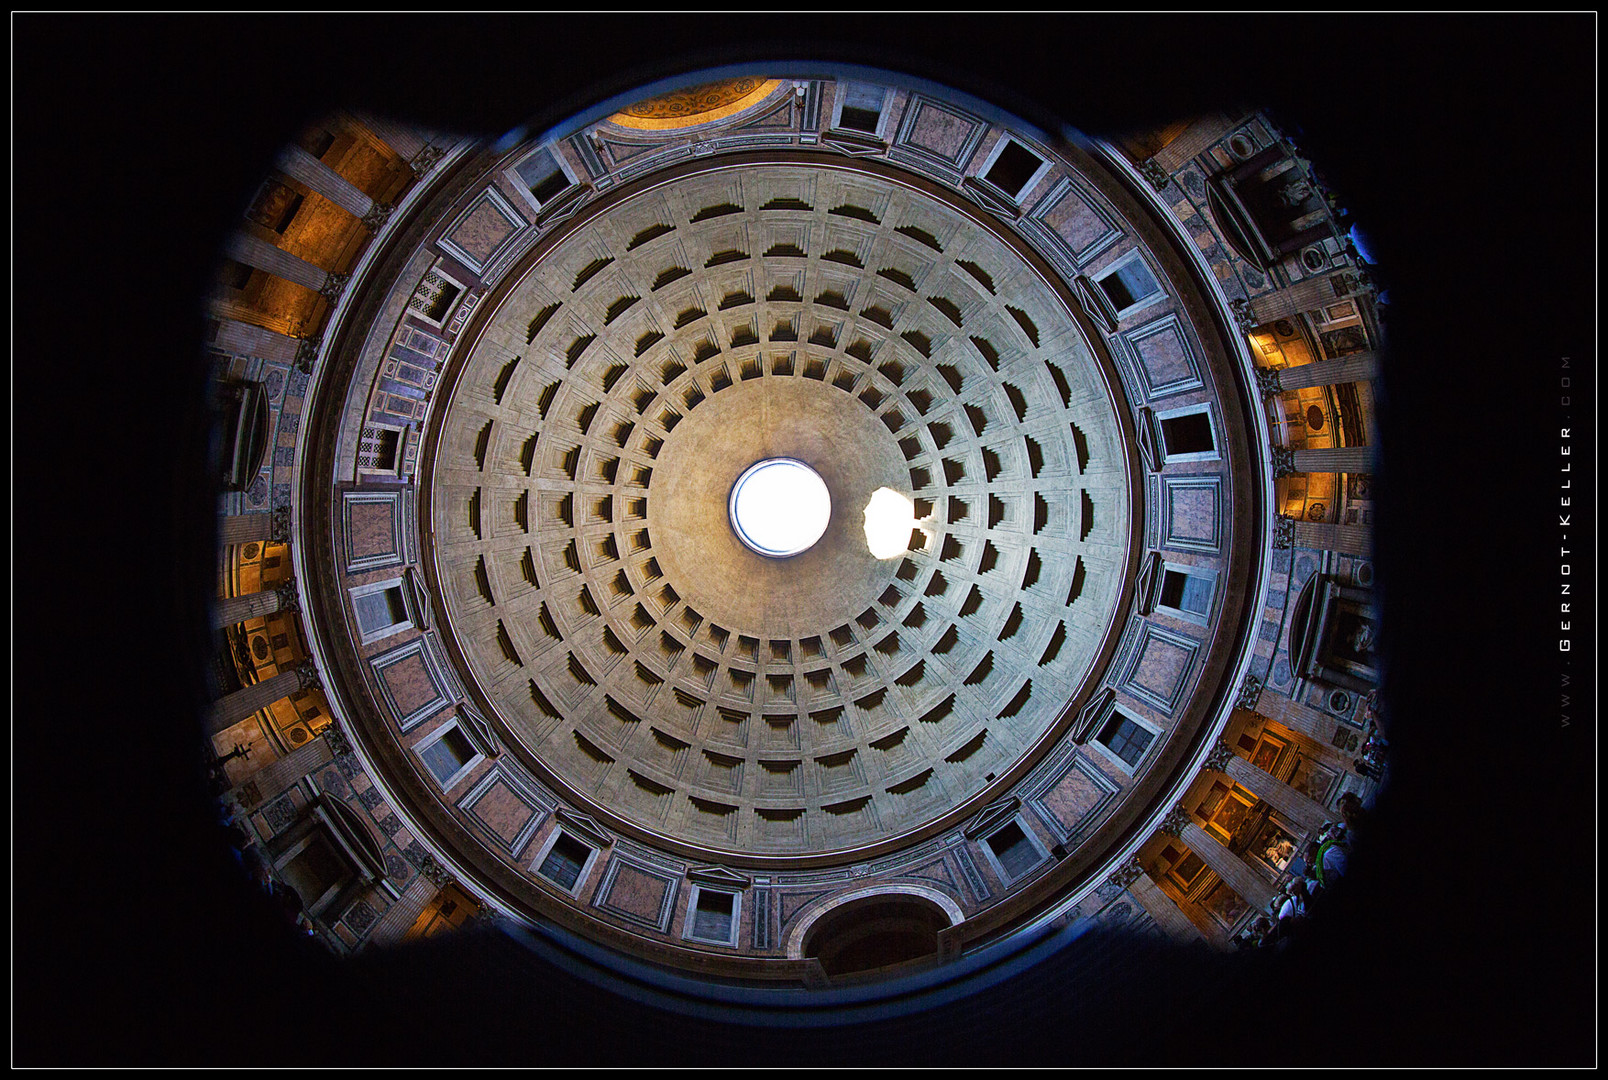 06378 - Raumschiff Pantheon (Italienische Impressionen)